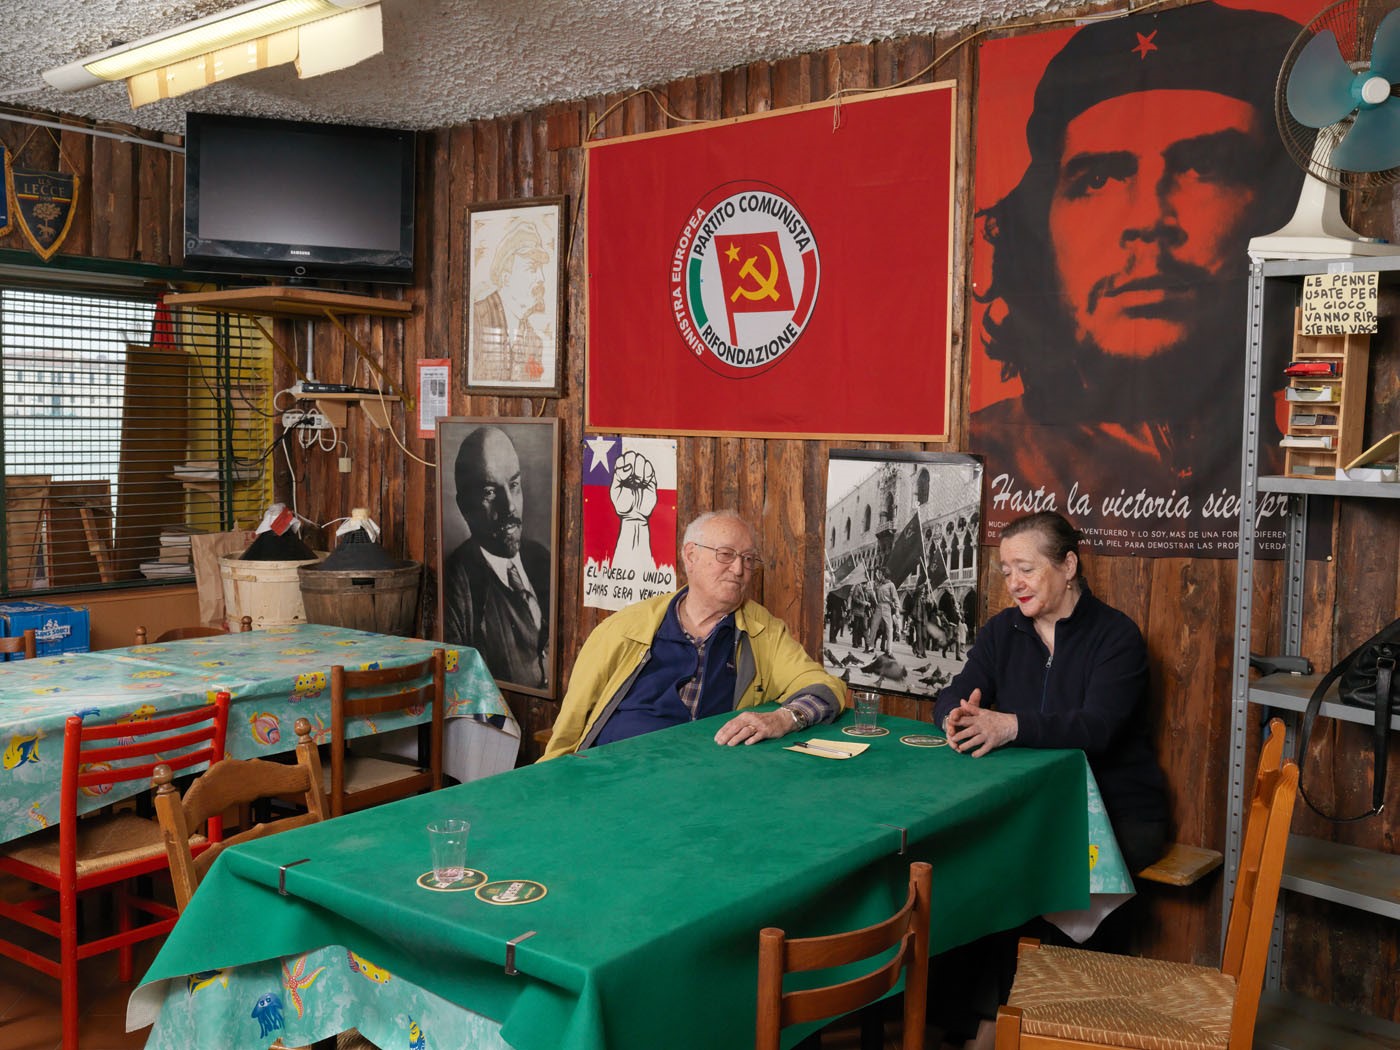 Jan Banning, ‘Italië’, Partito della Rifondazione Comunista (PRC), Circolo Giudecca, Venezia.